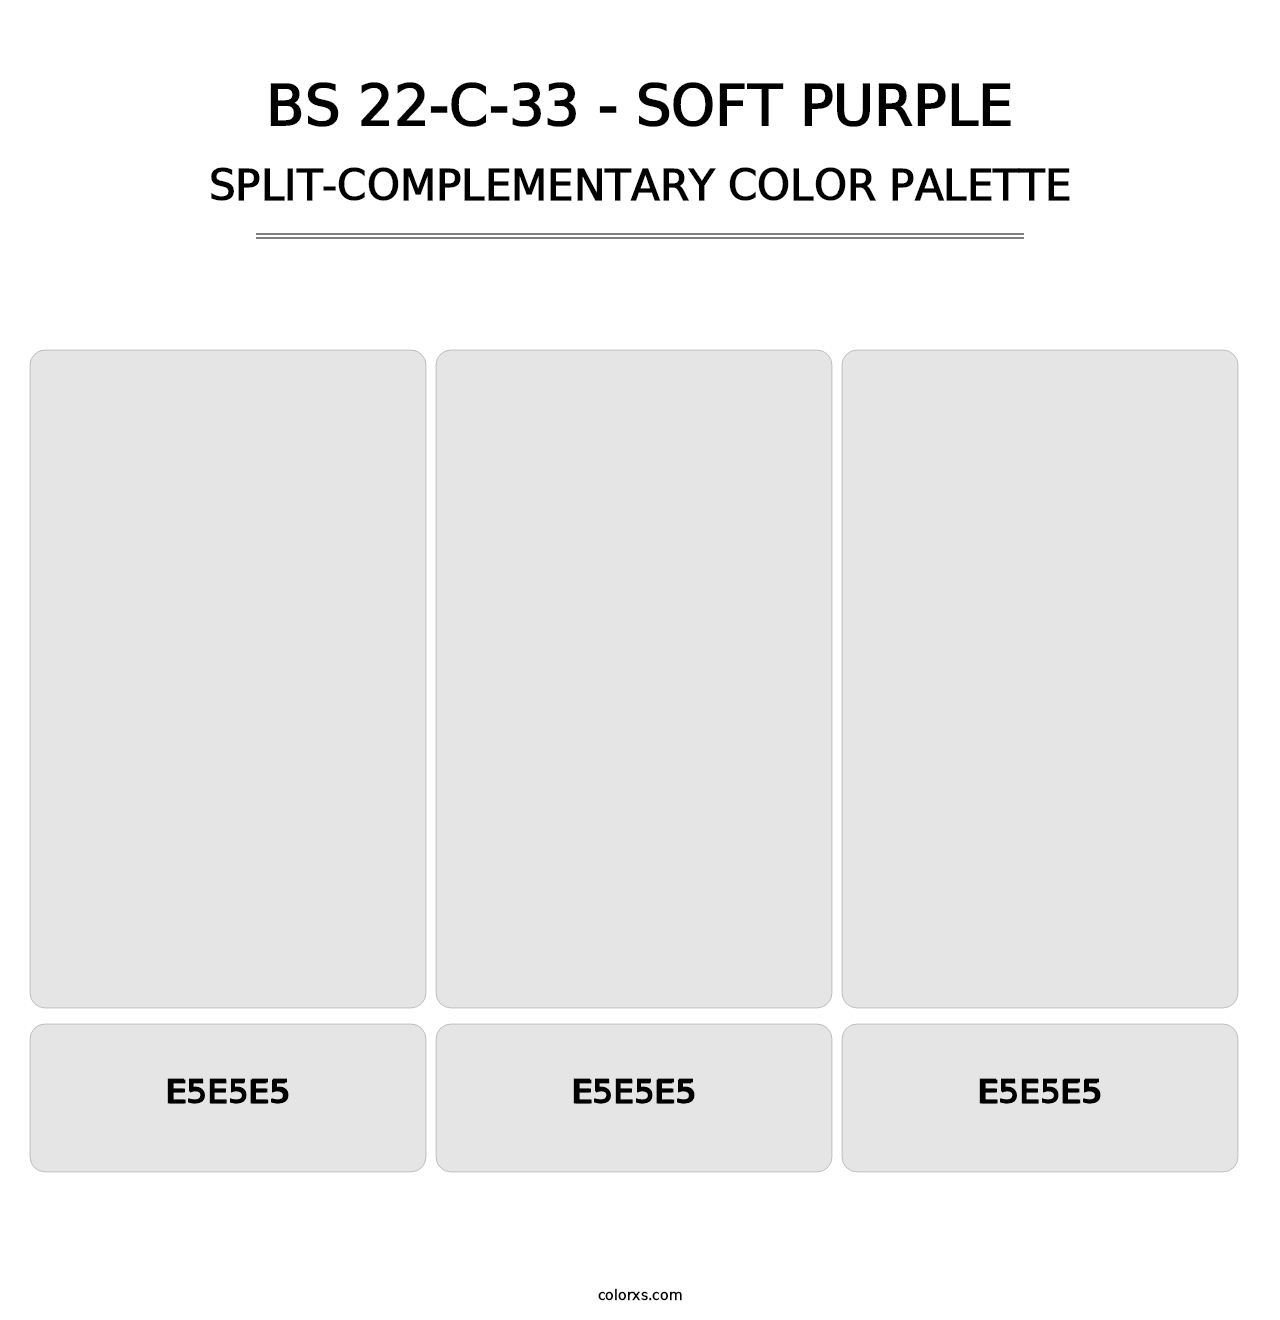 BS 22-C-33 - Soft Purple - Split-Complementary Color Palette